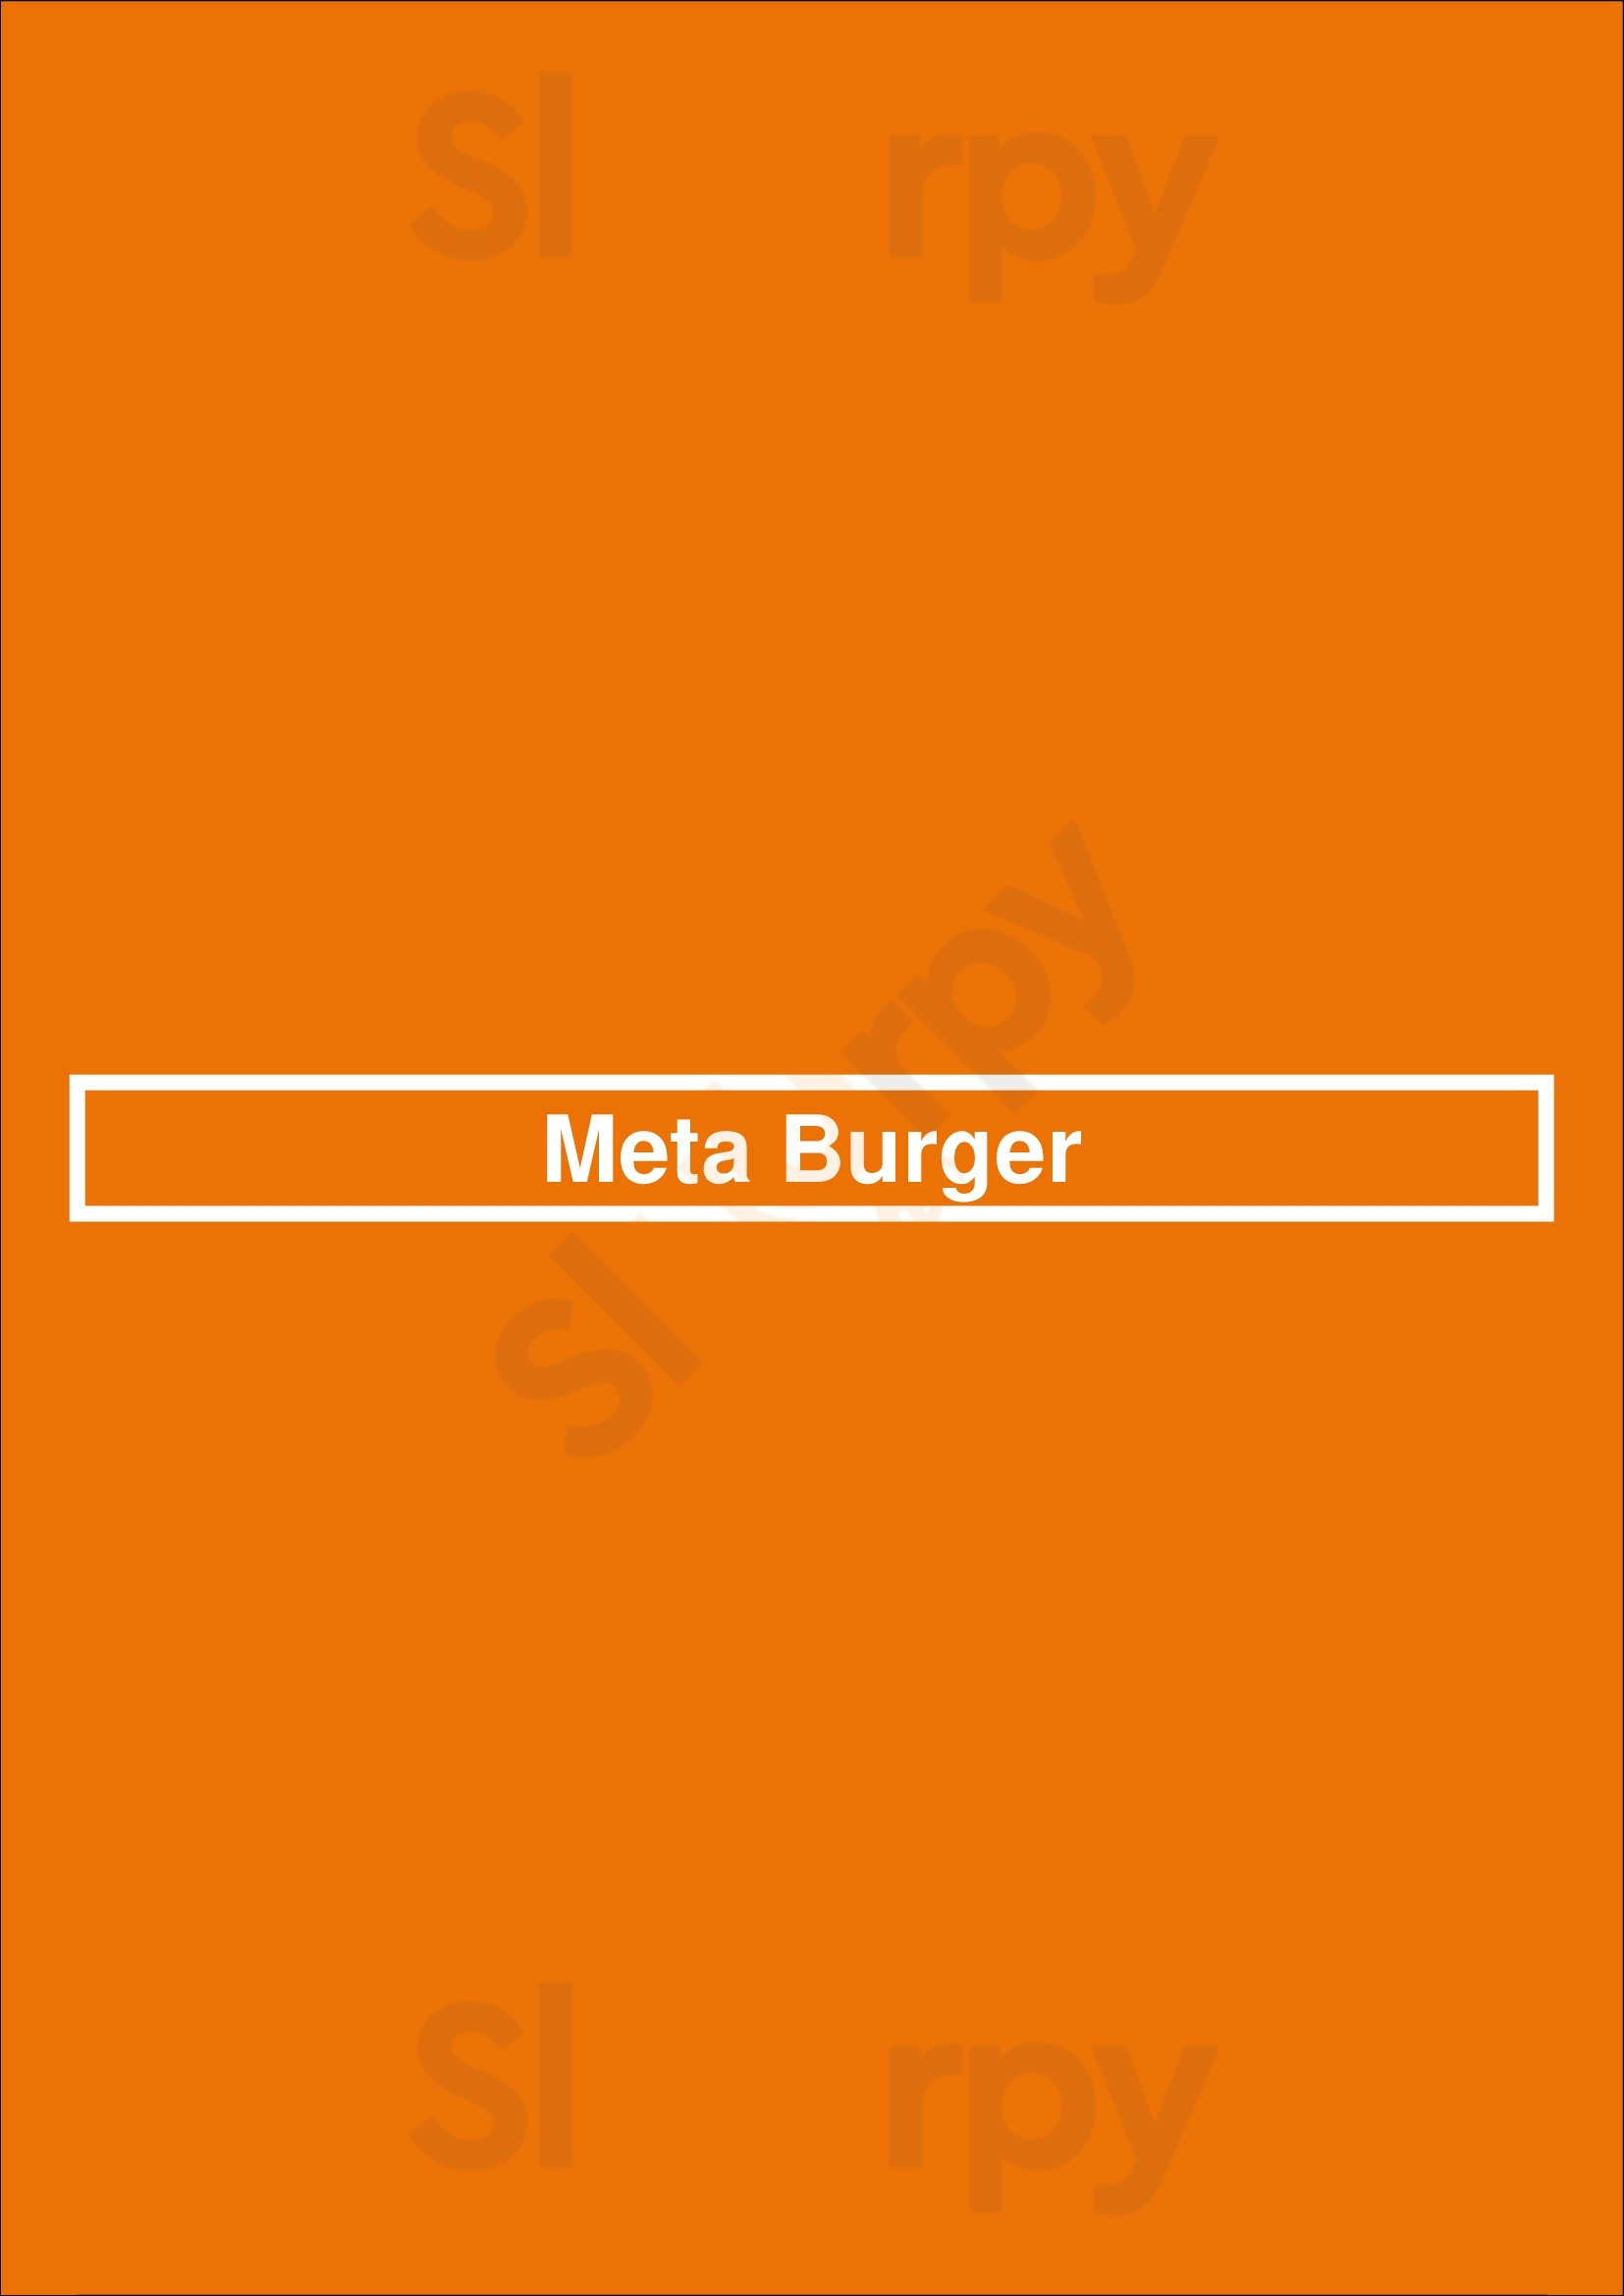 Meta Burger Denver Menu - 1